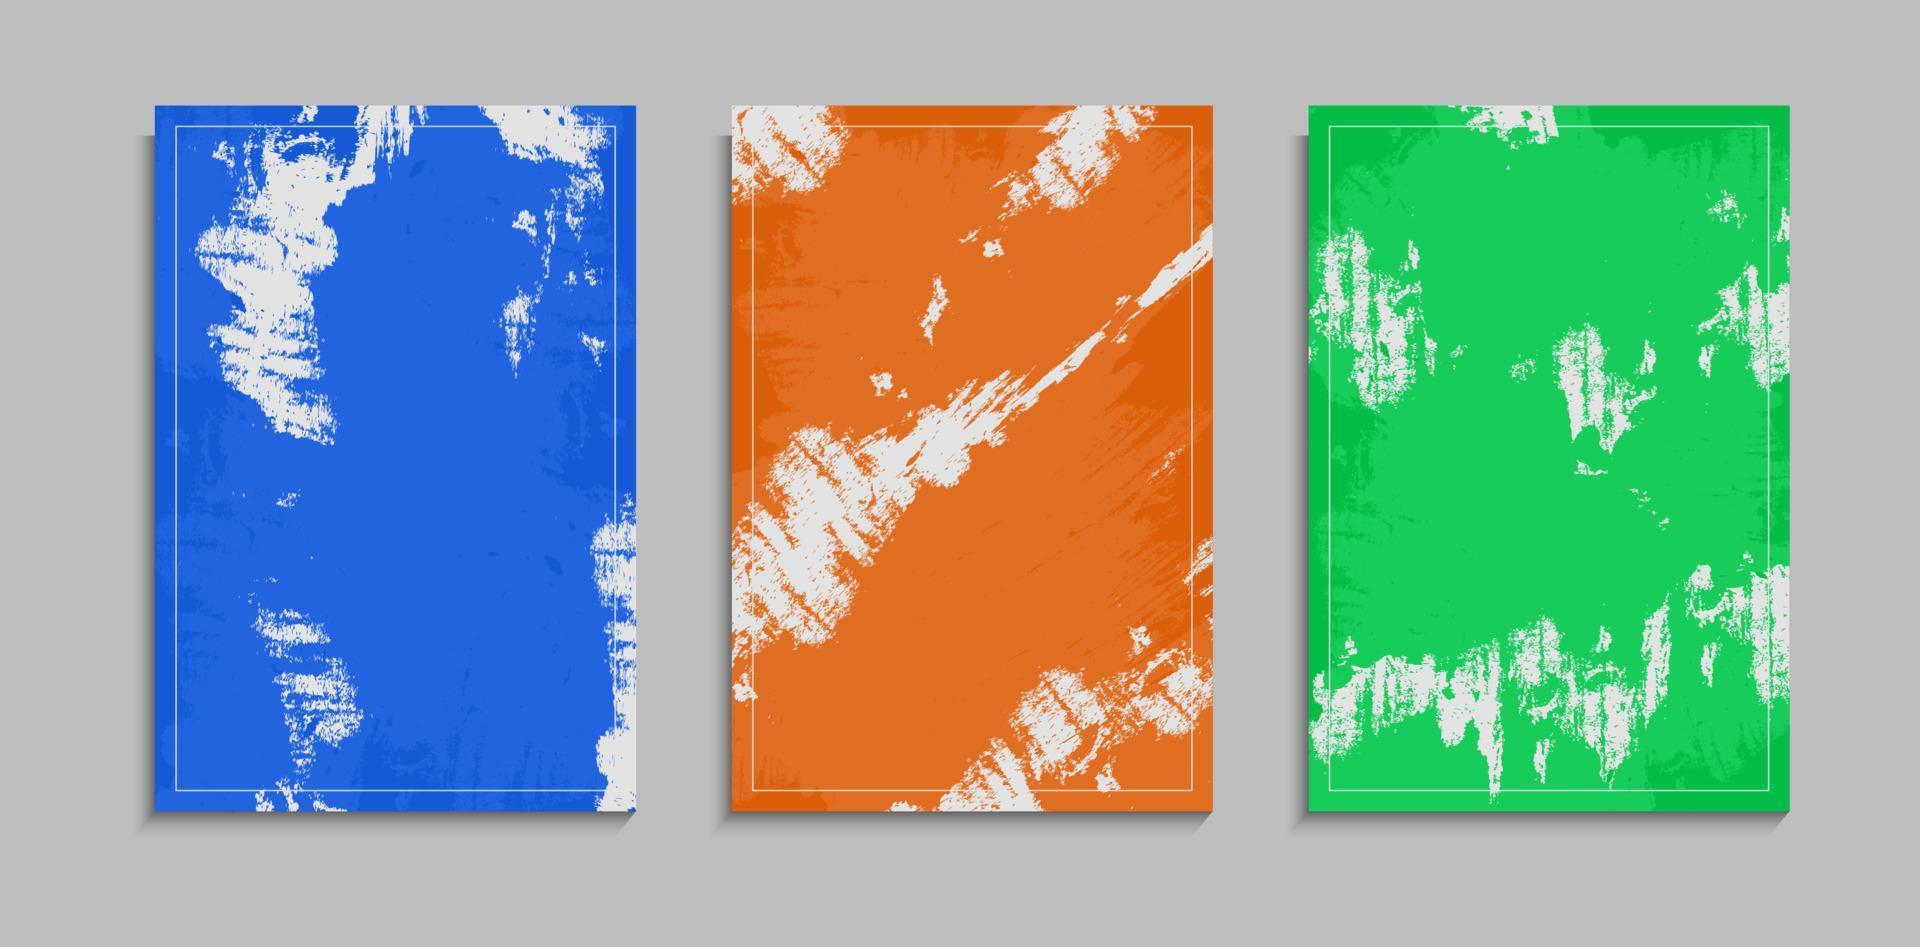 ensemble de texture grunge colorée abstraite sur fond blanc pour bannière, affiche ou modèle de couverture vecteur